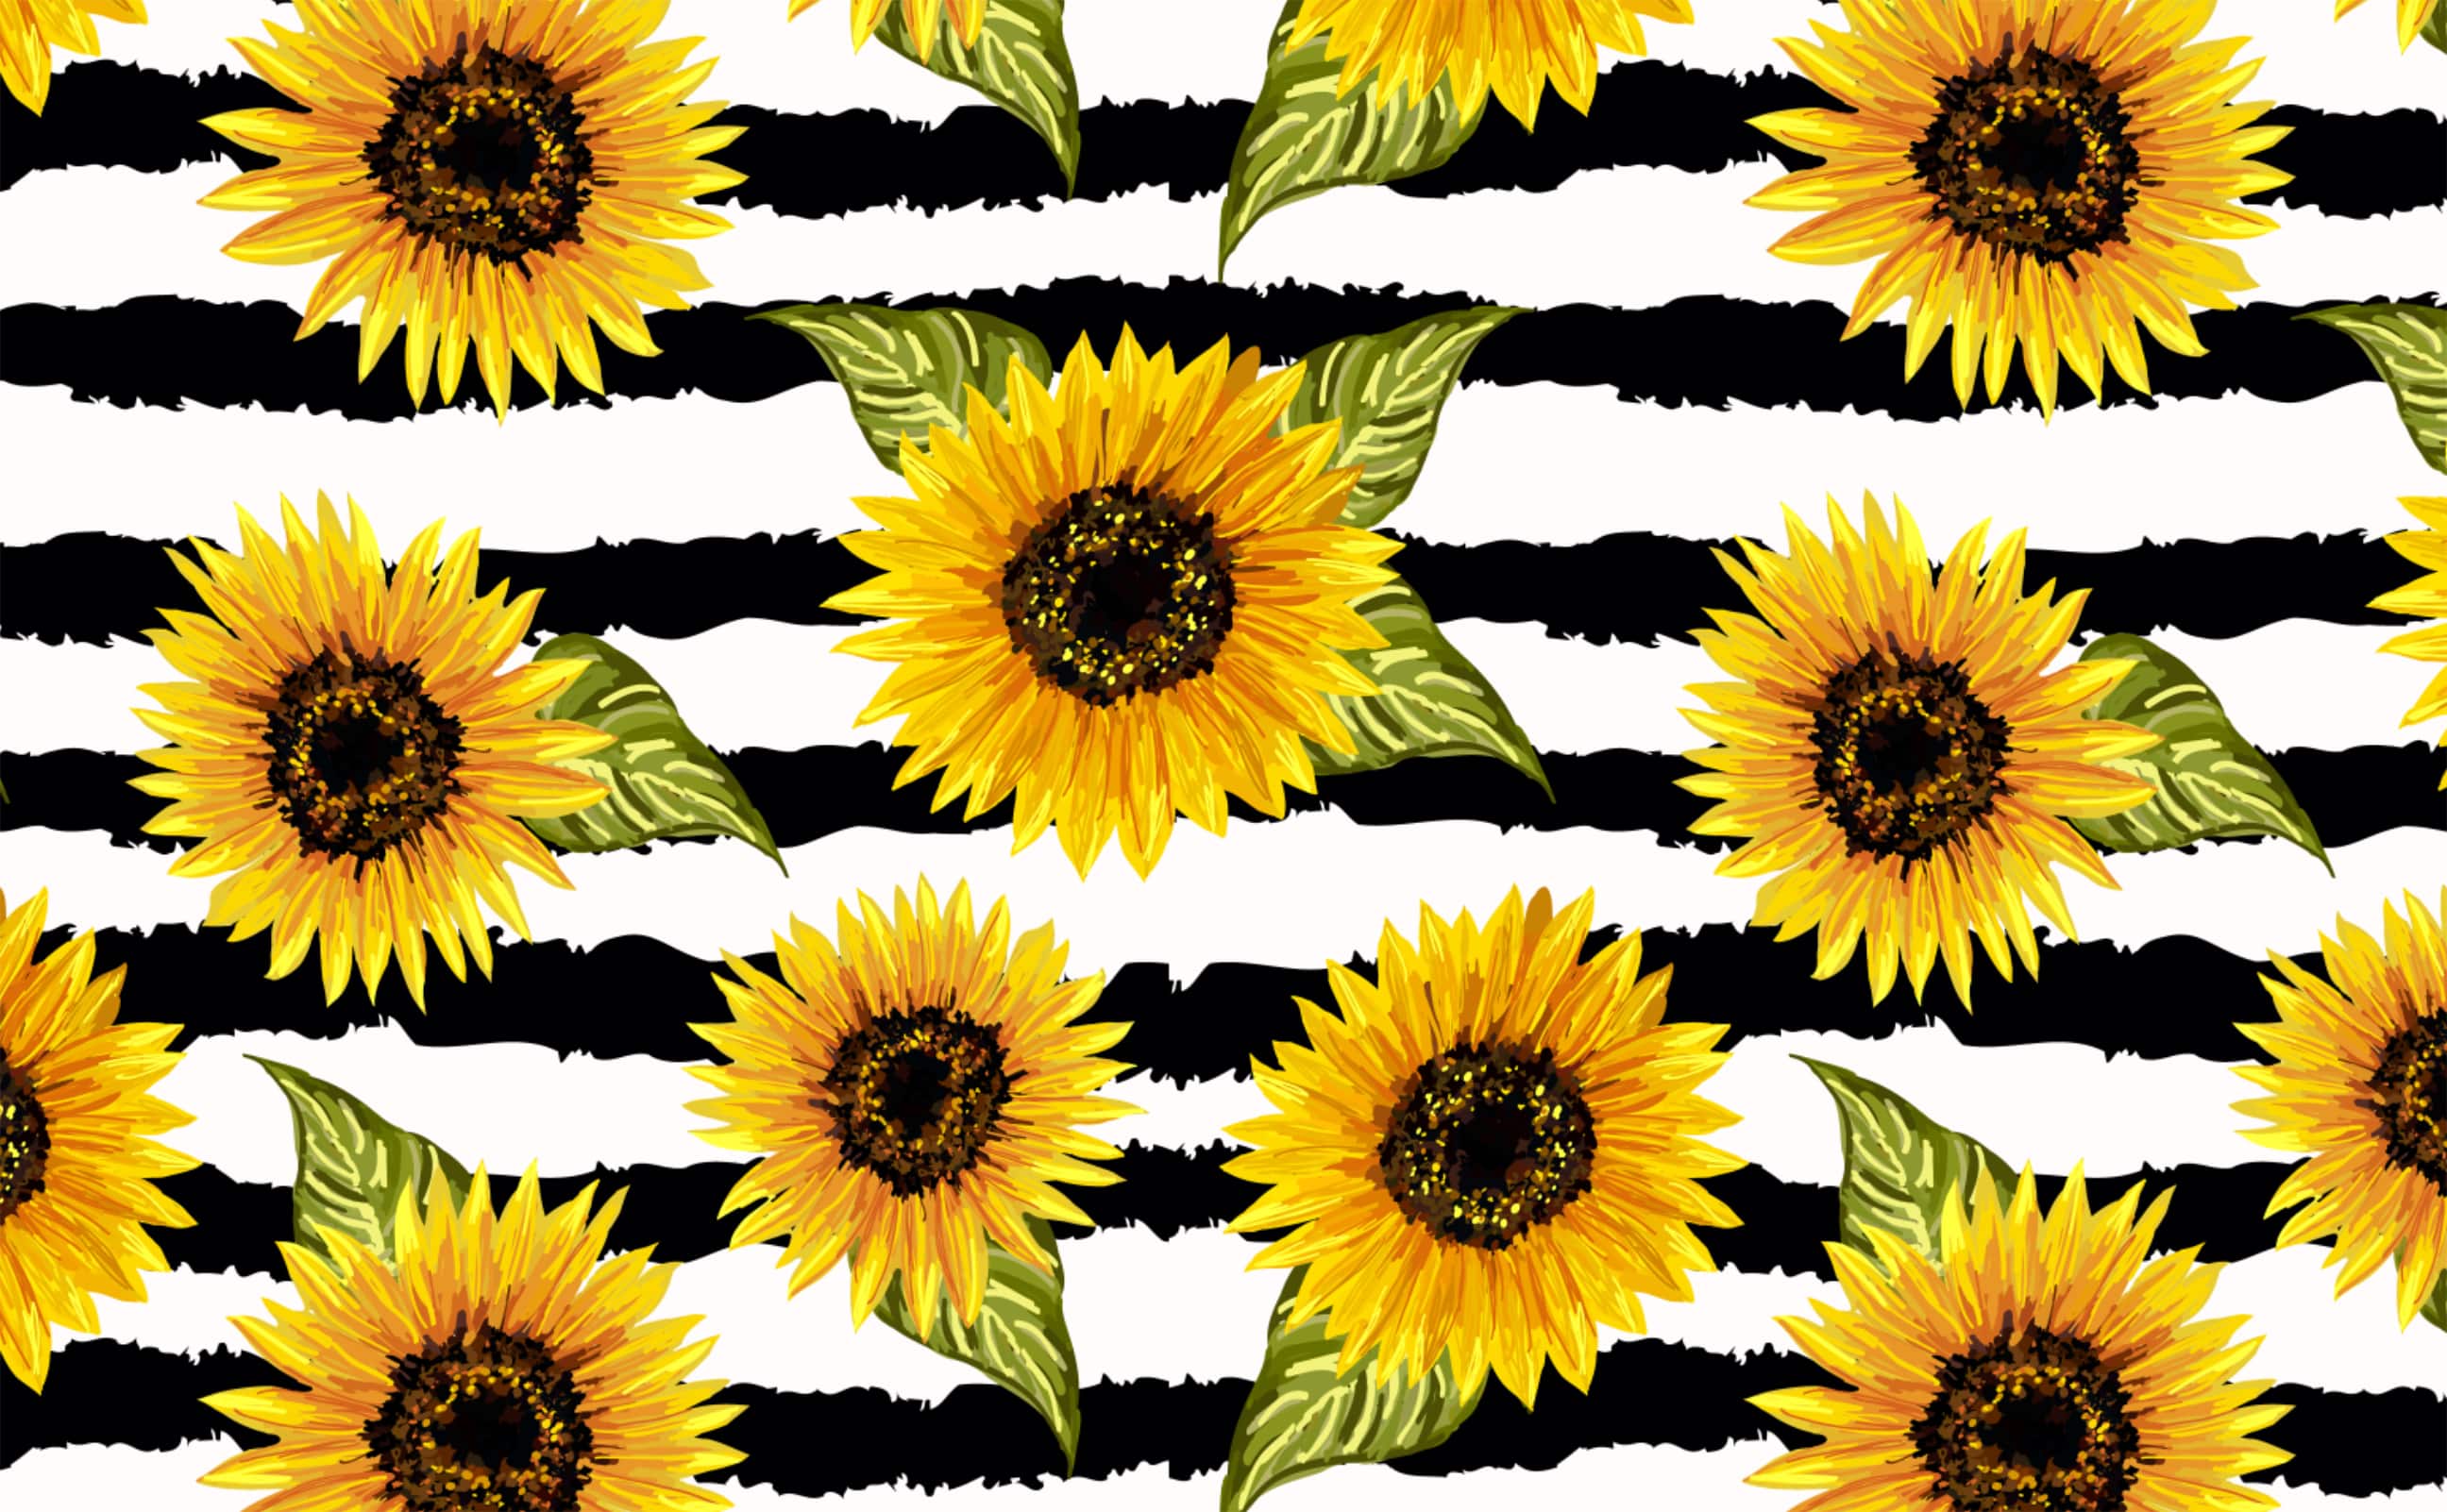 Vibrant sunflower on black white contrast background Wallpaper for Walls